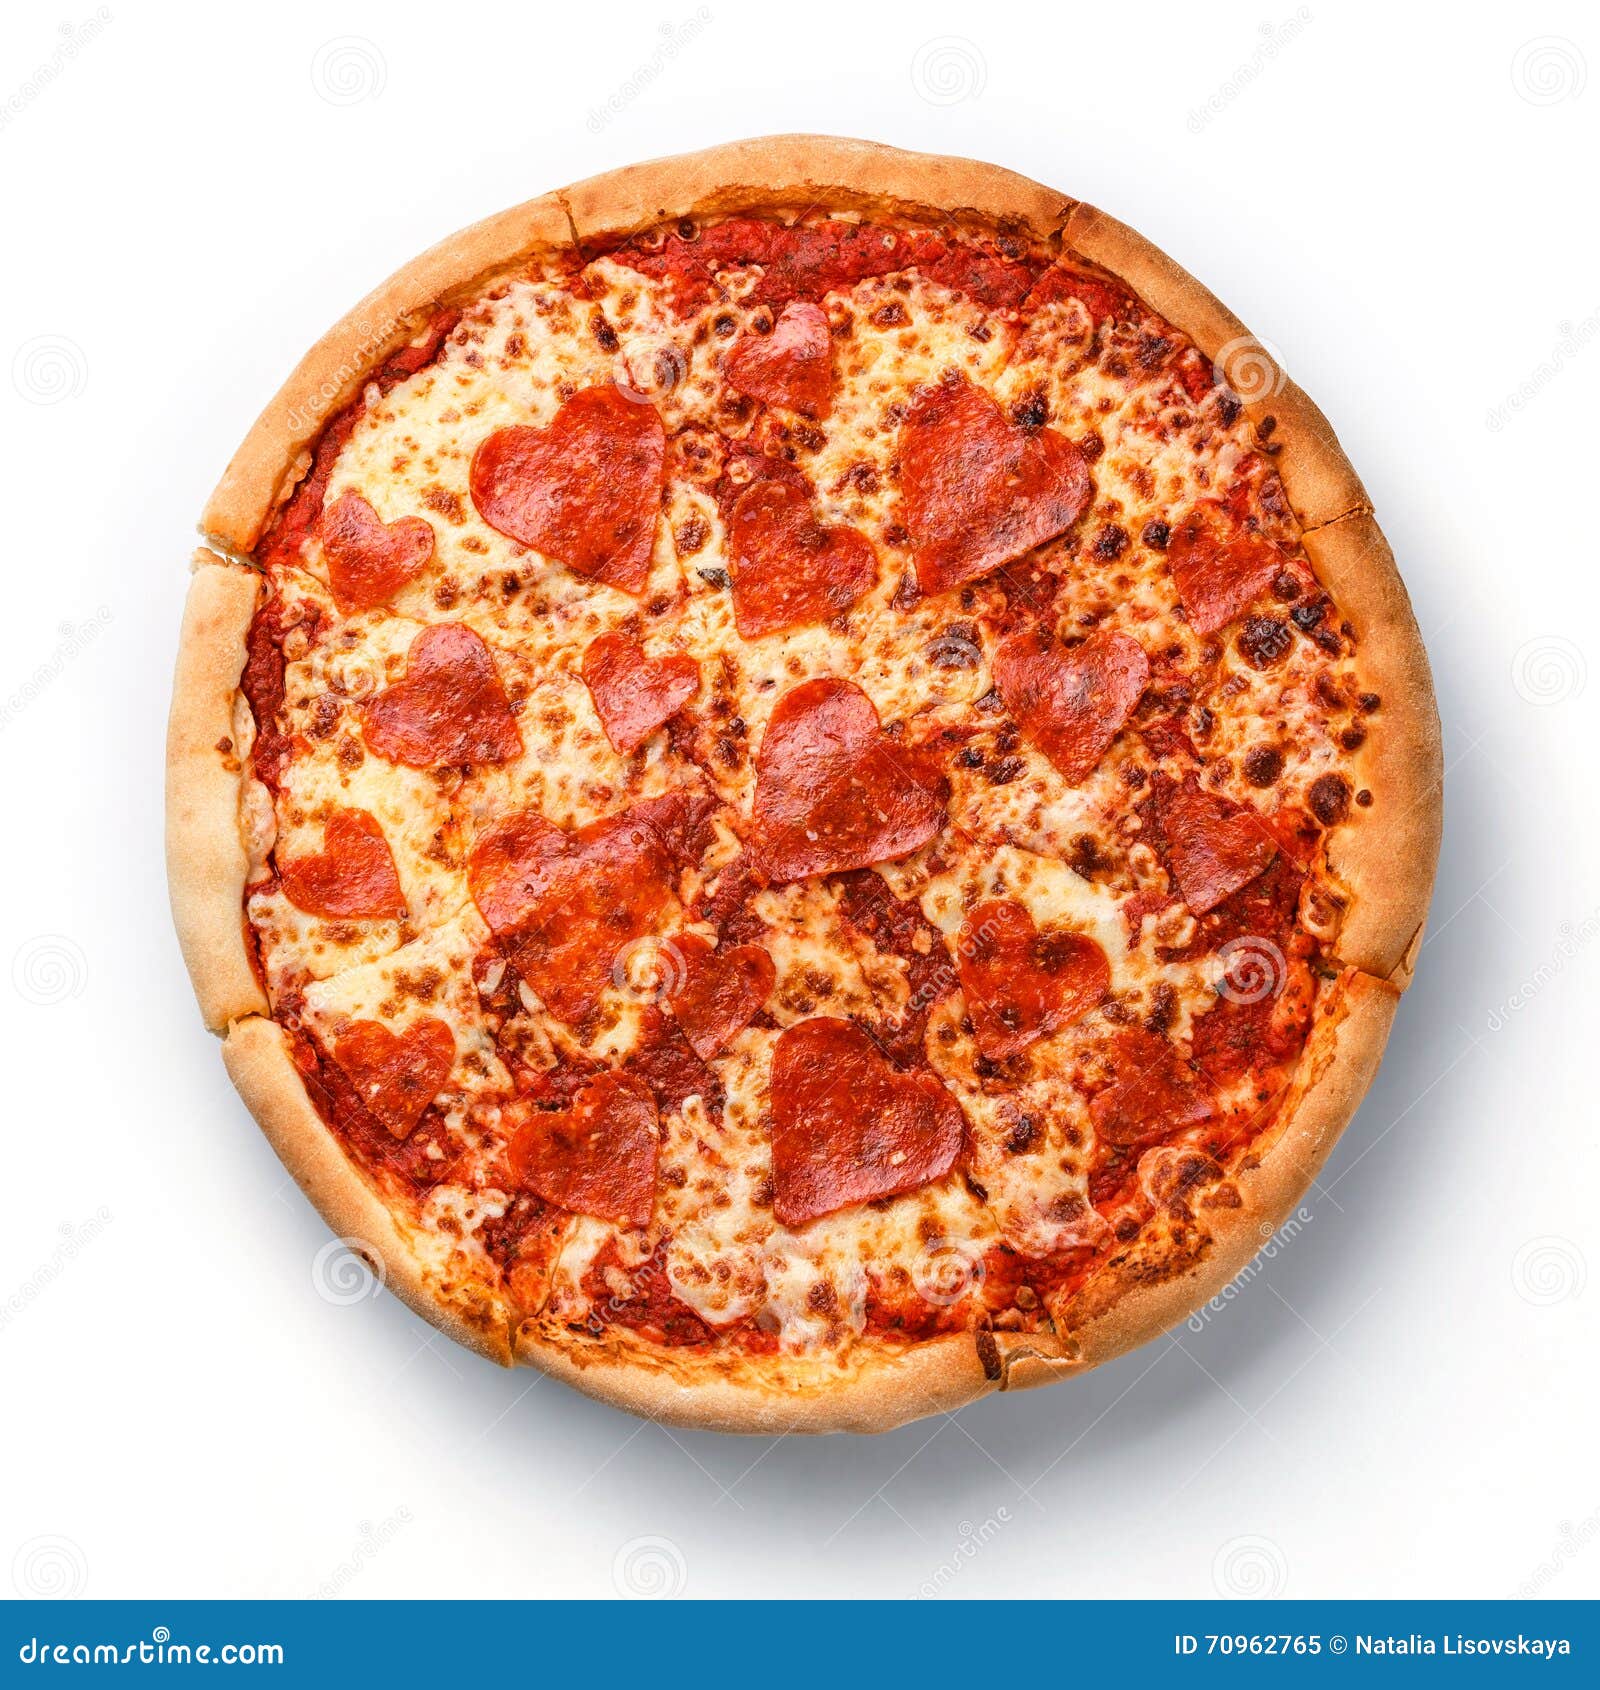 томато пицца пепперони фото 104